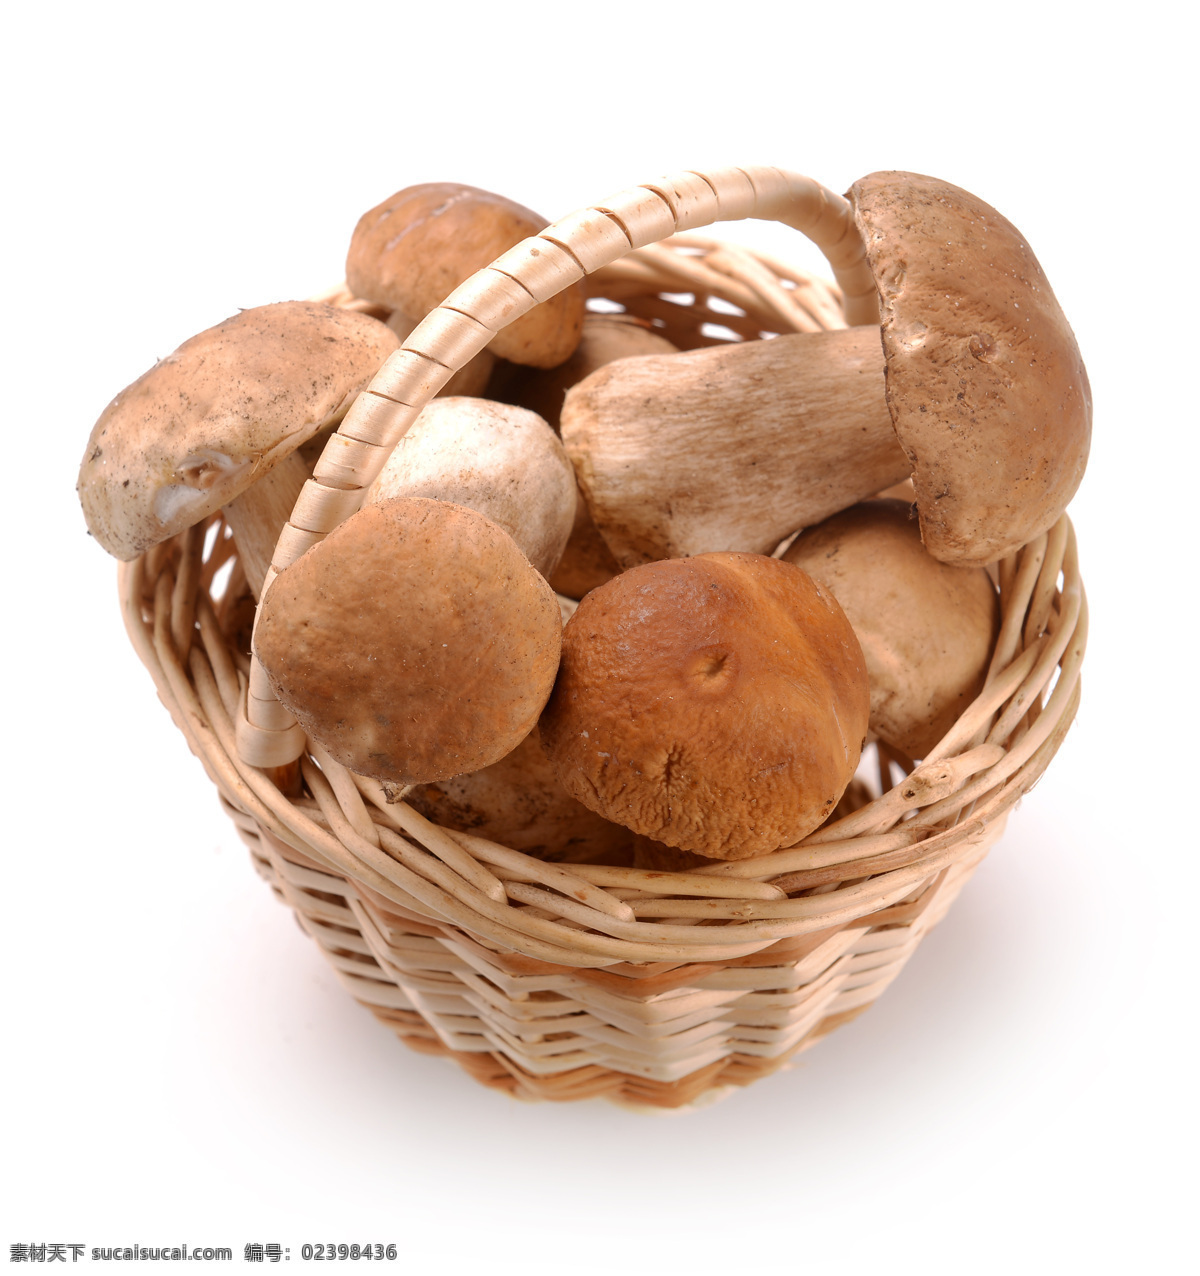 蘑菇 蔬菜 食用菌 香菇 美食 食材 鲜美 可口 新鲜 餐饮美食 食物原料